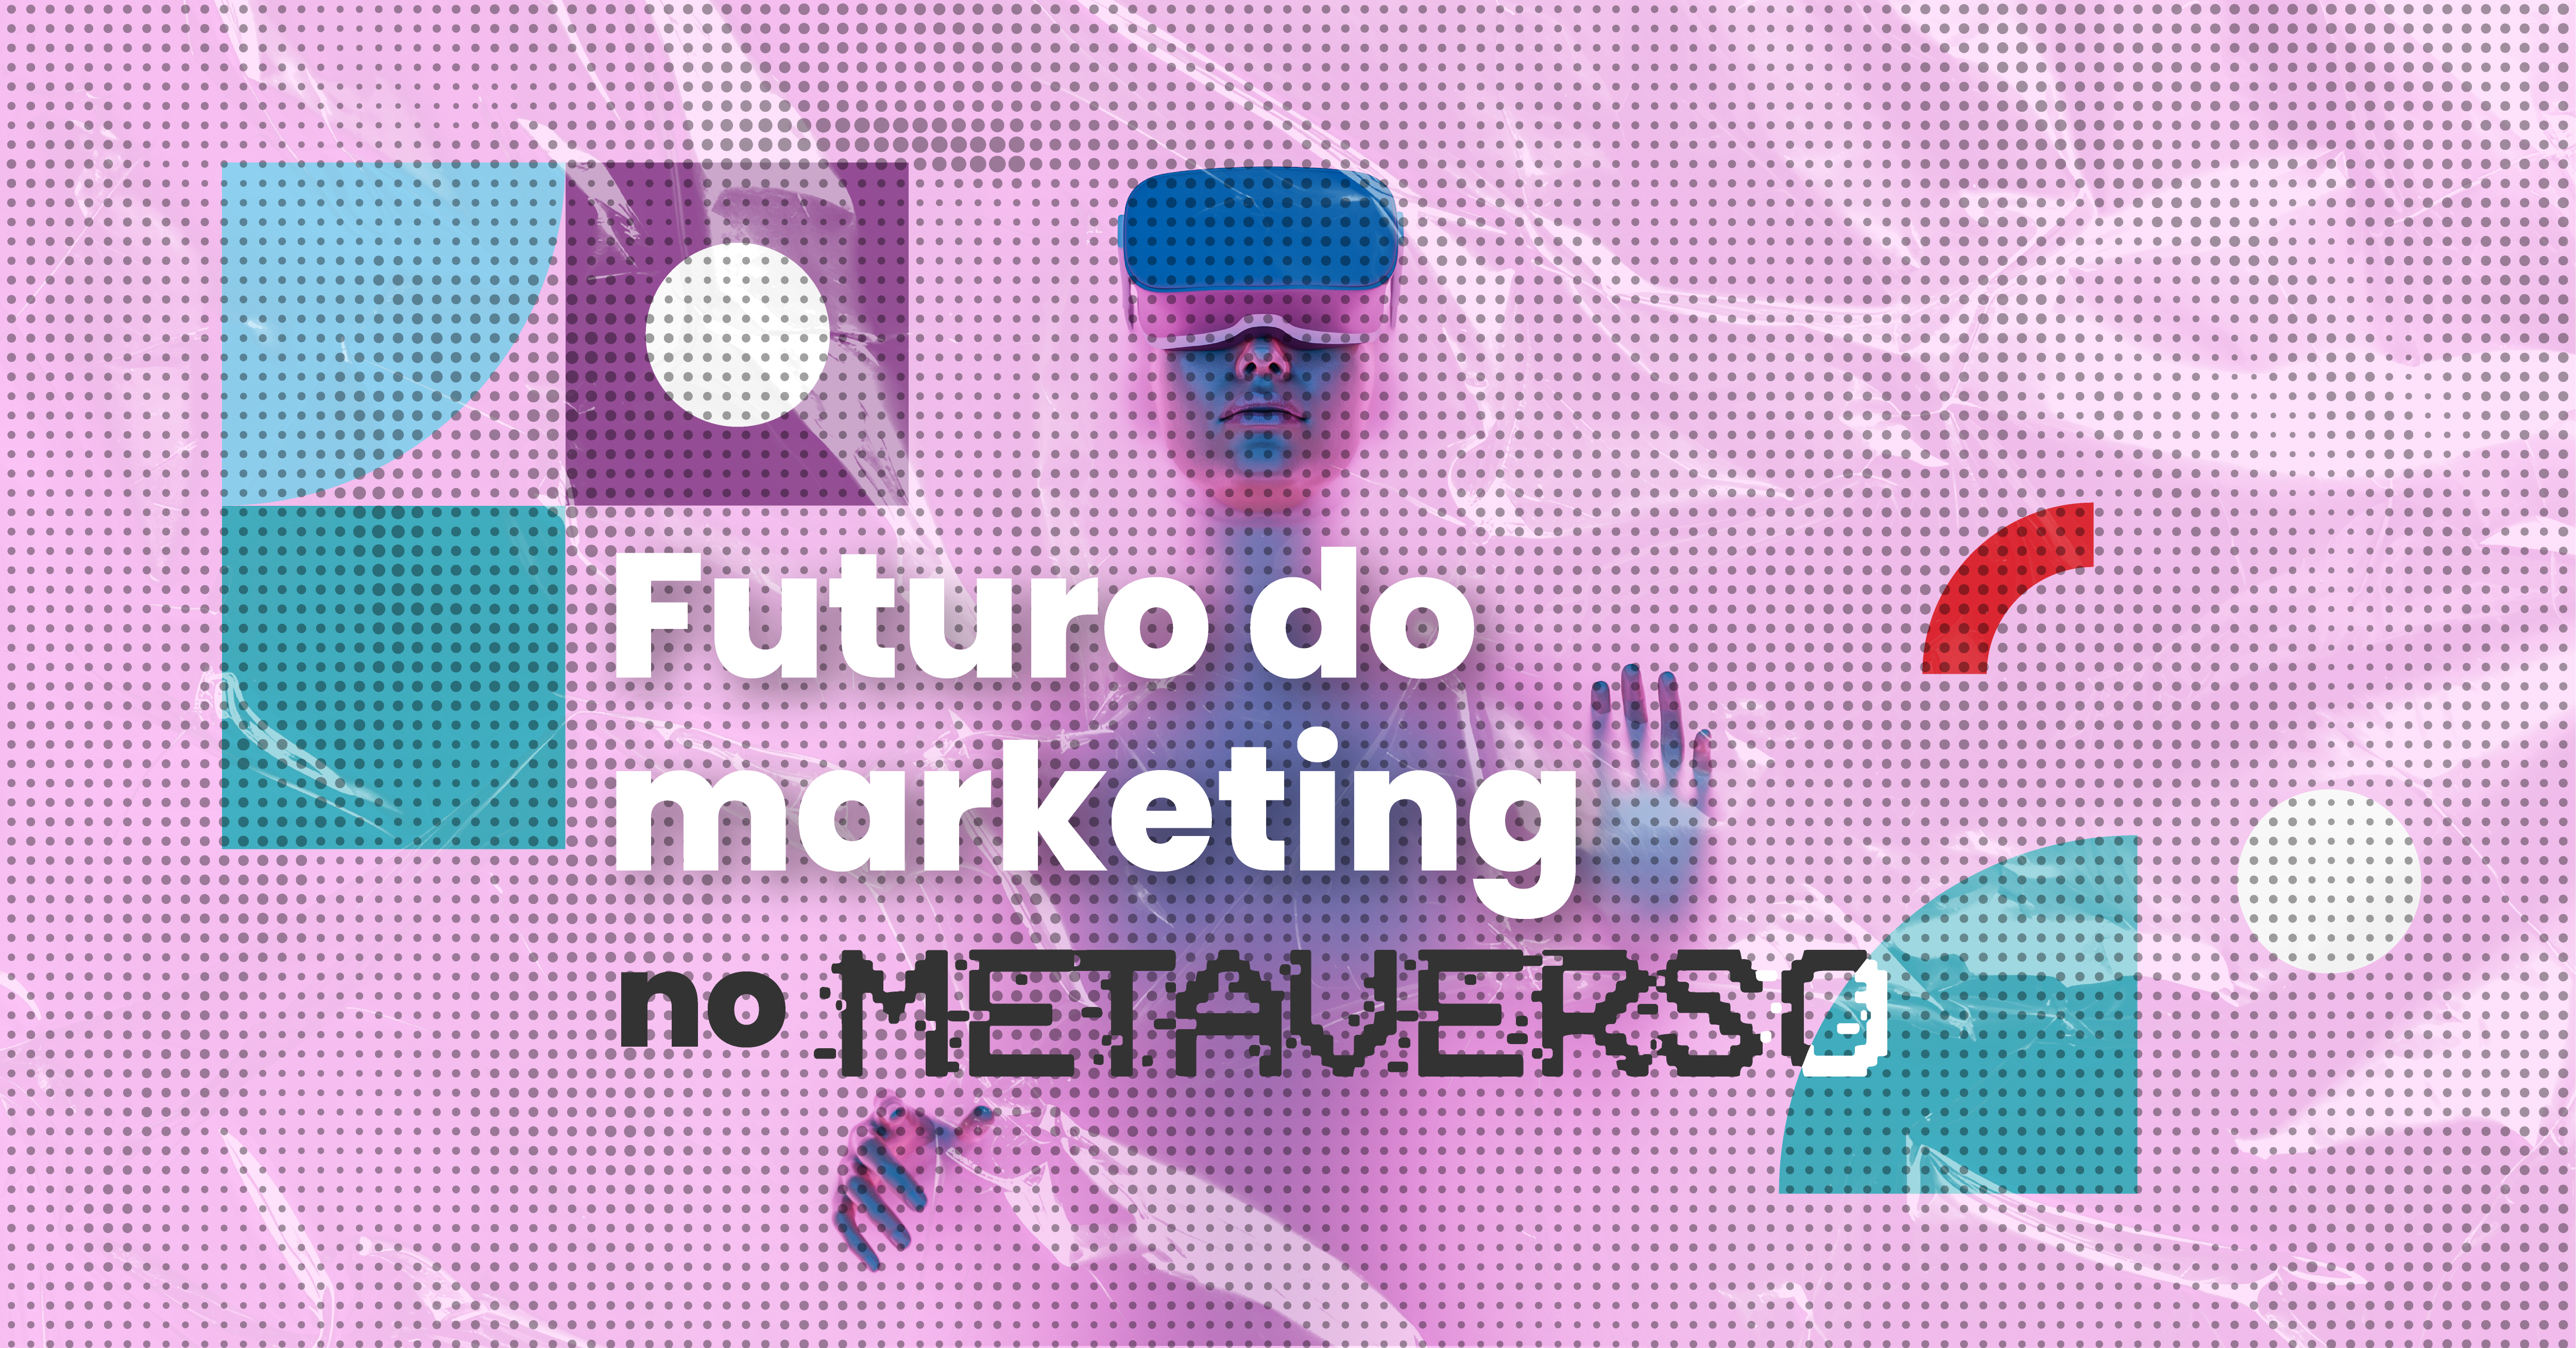 Futuro do Marketing no metaverso